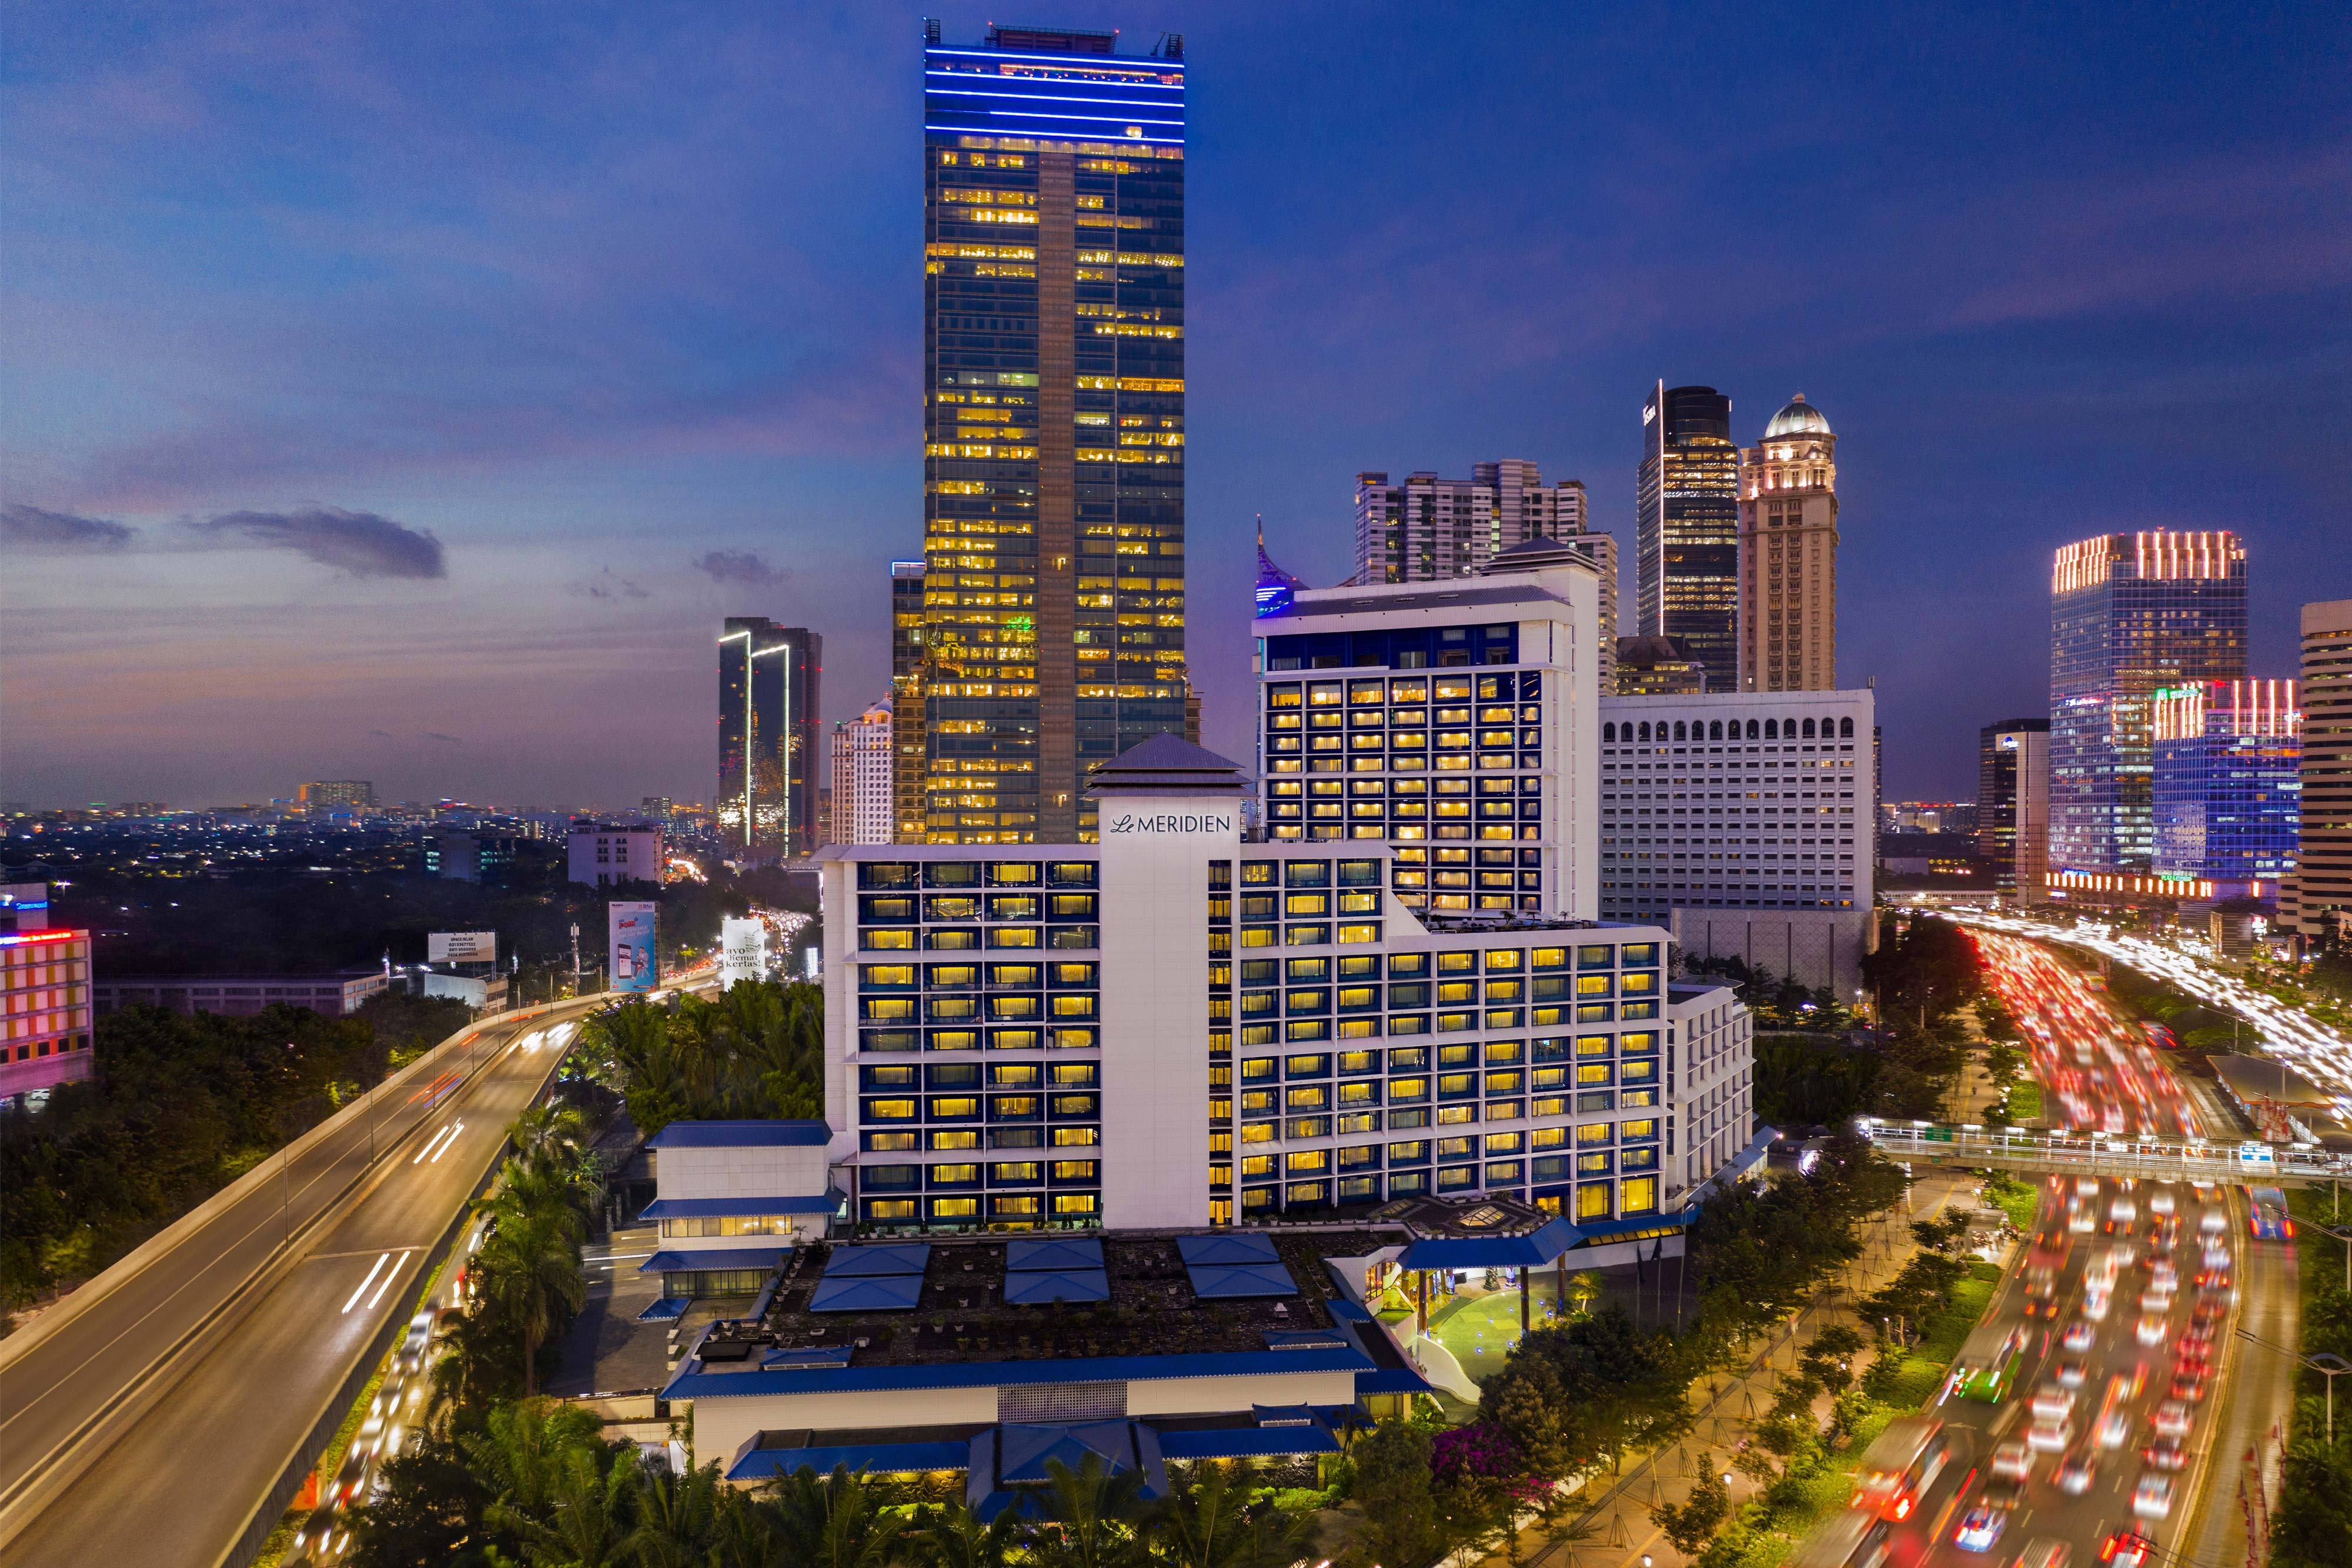 Le Meridien Jakarta- Jakarta, Indonesia Hotels- Deluxe Hotels in